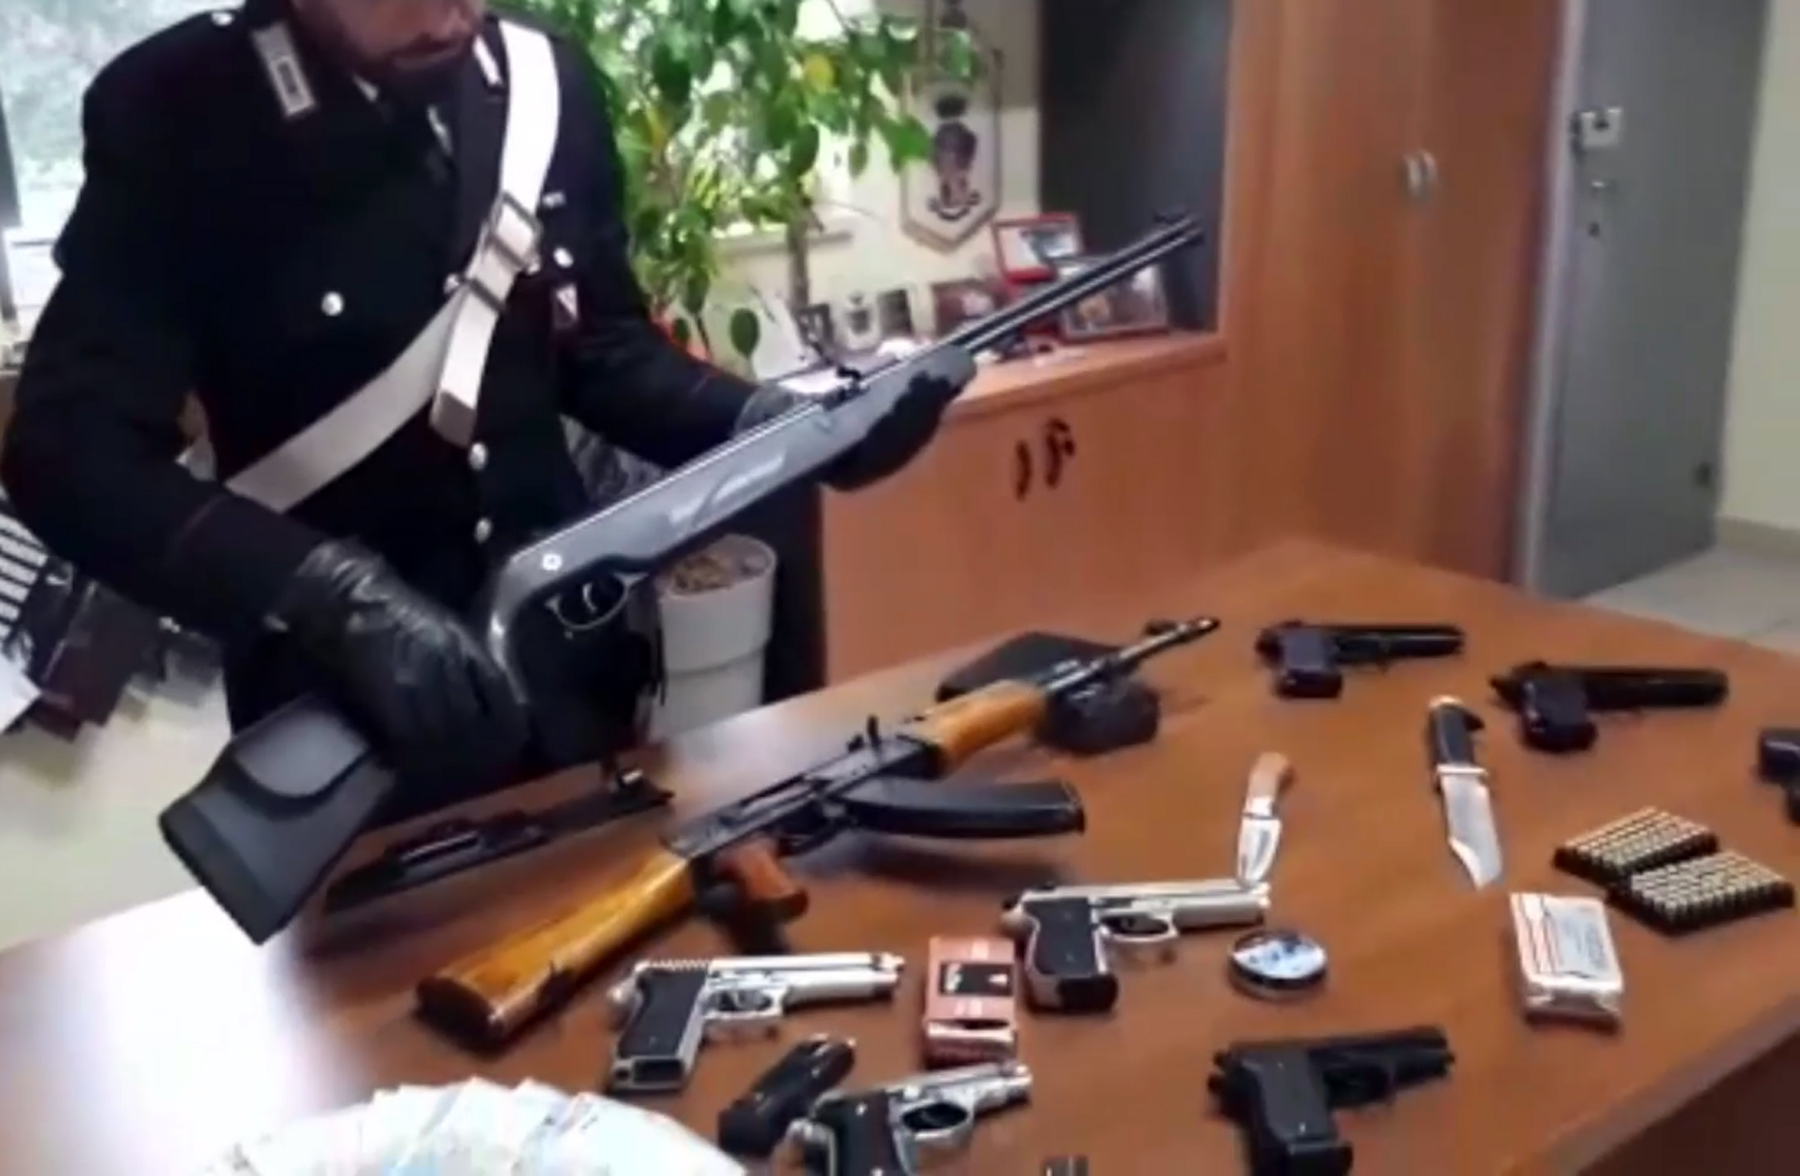  Varcaturo, coppia del Rione Traiano nascondeva armi a casa: arrestati 